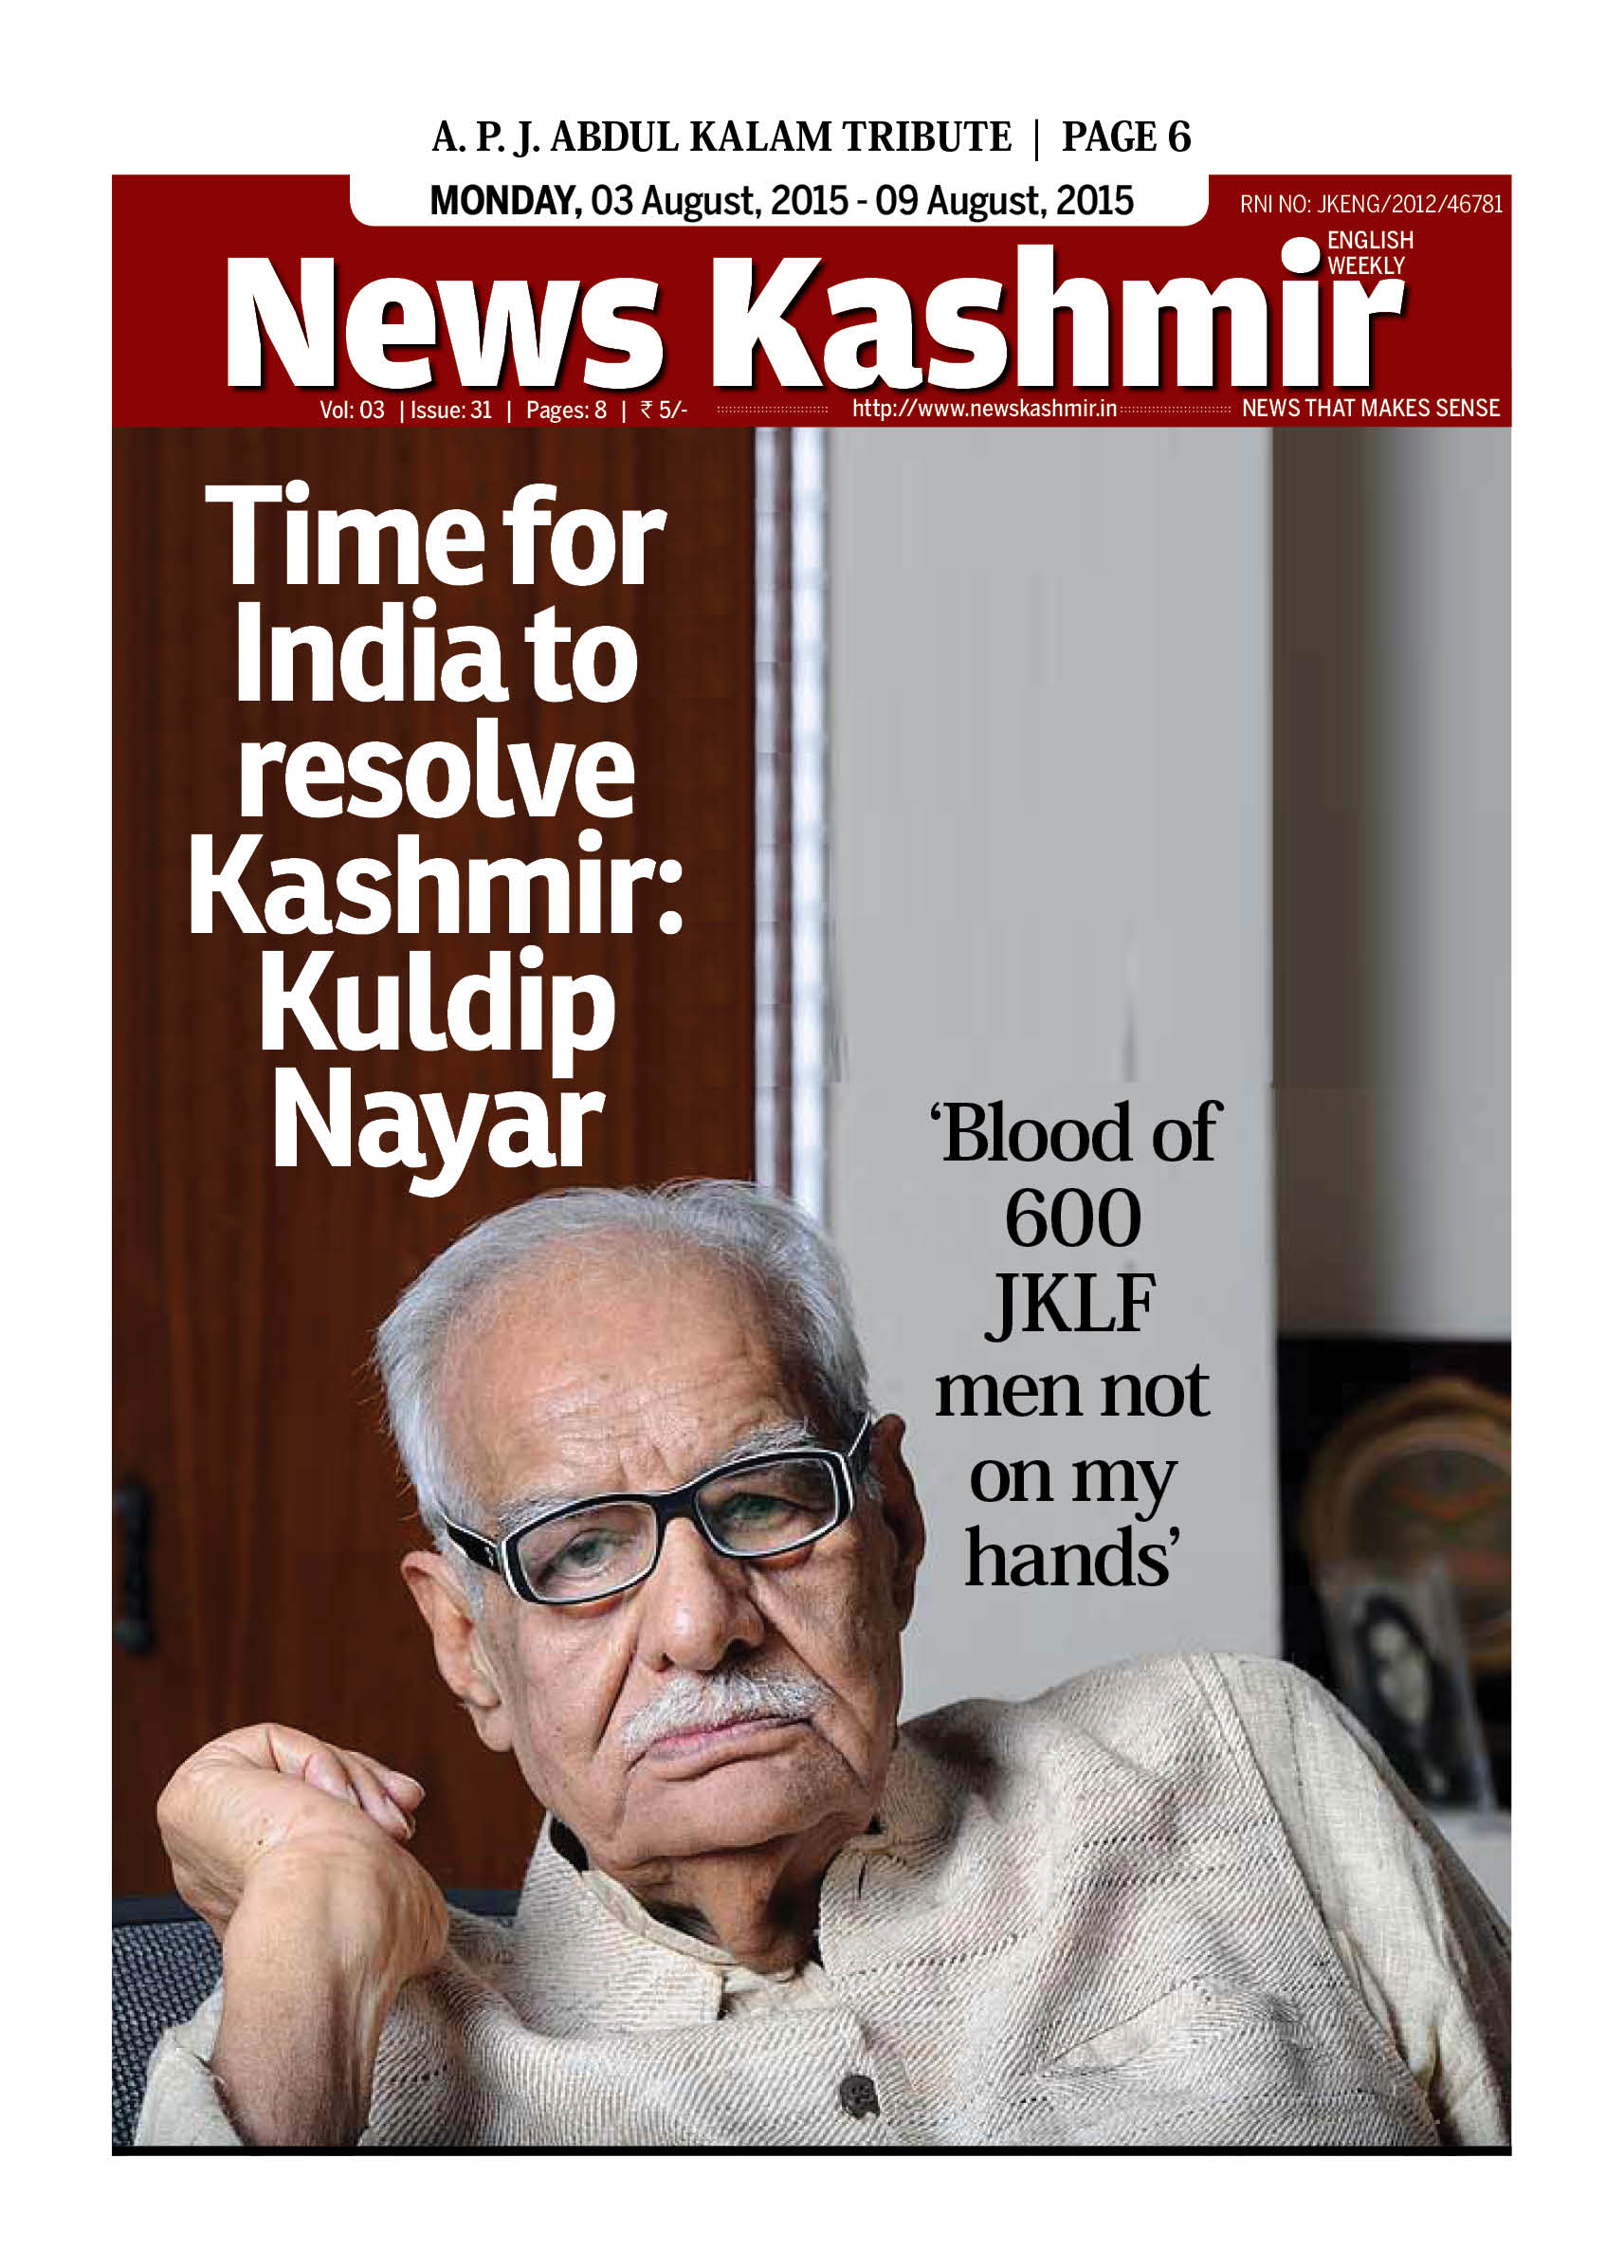 Time for India to resolve Kashmir: Kuldip Nayar